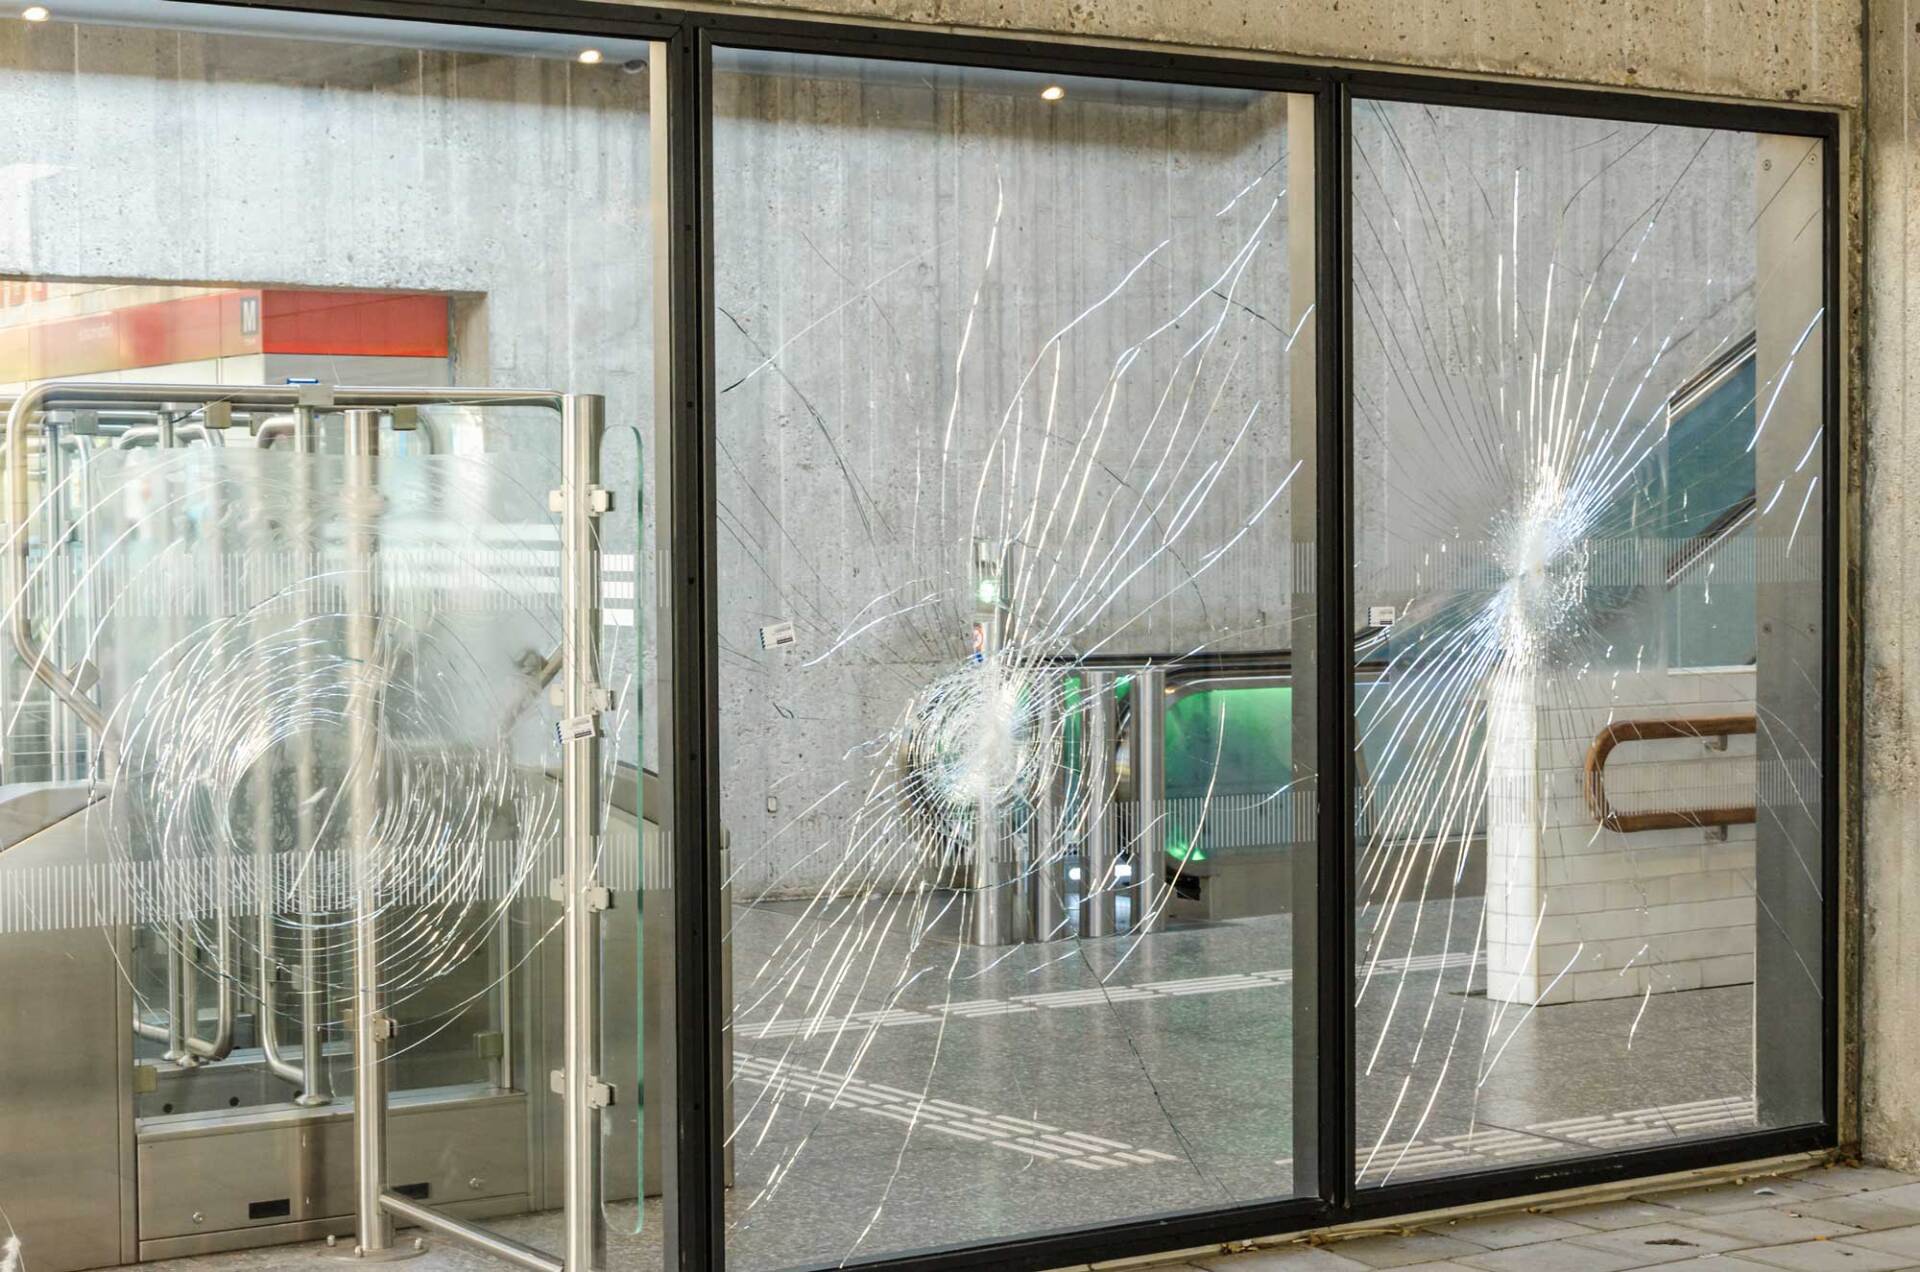 Devanture de magasin vandalisée, vitres cassées